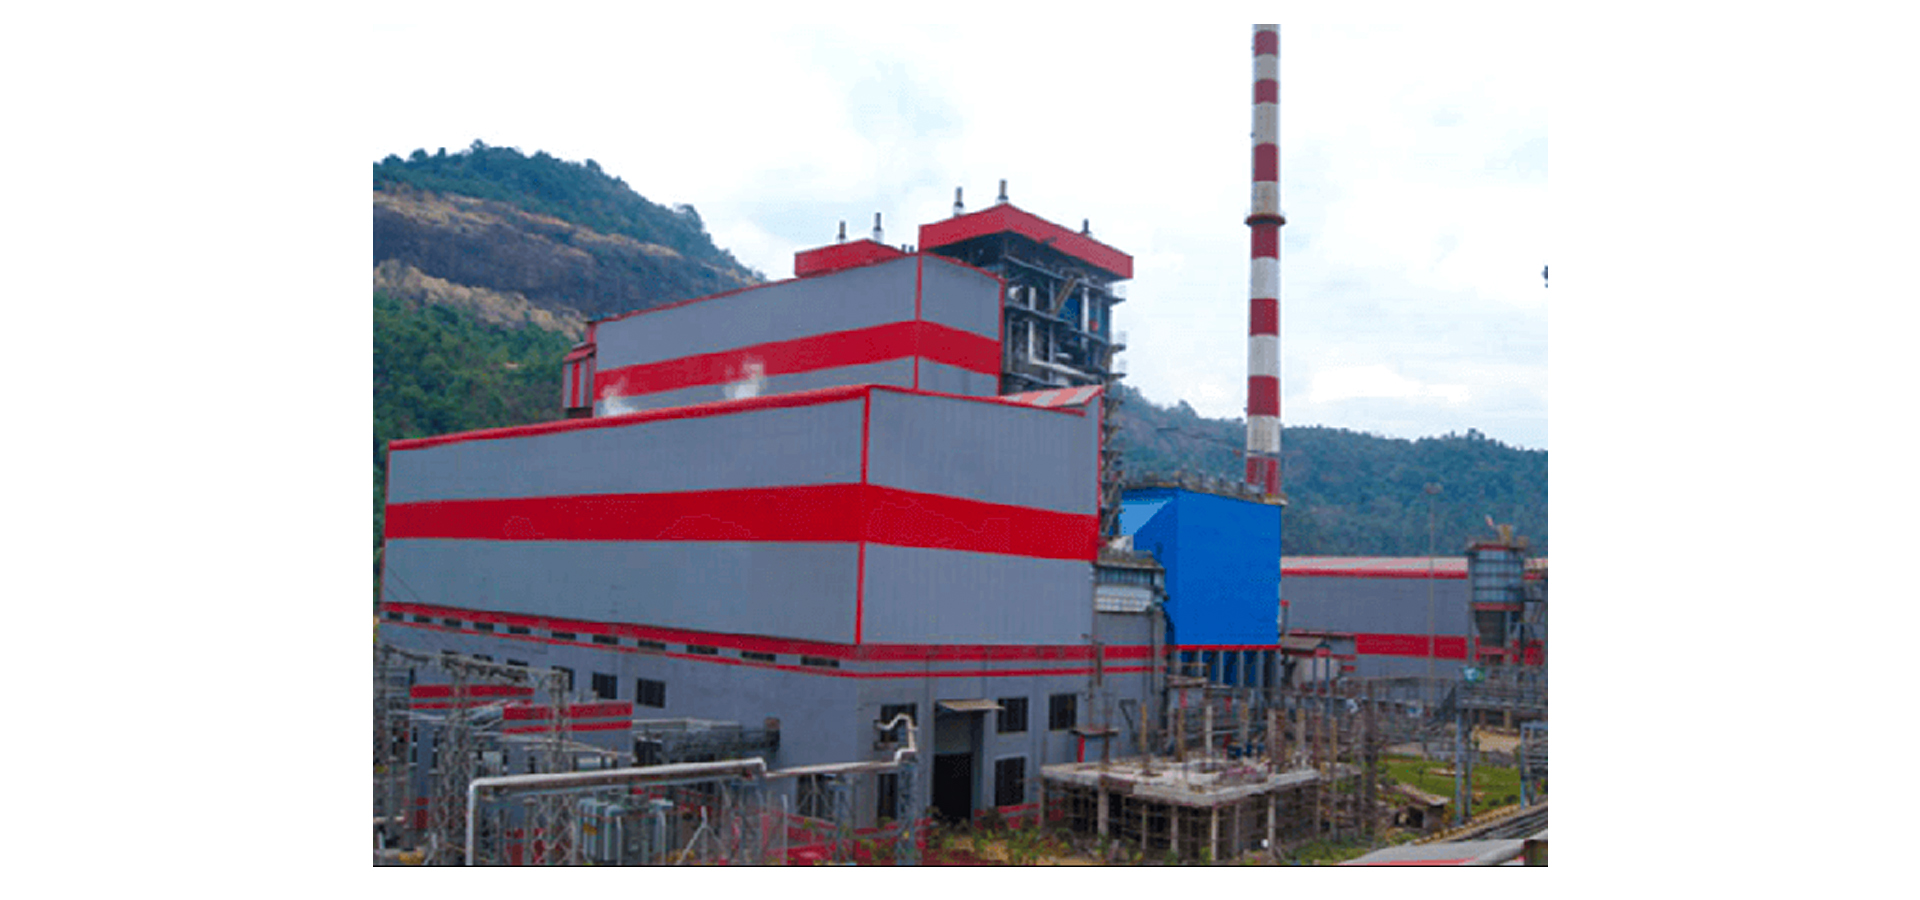 Uttam Galvanized Steel электростанция, Индия(2 x 30 МВт)